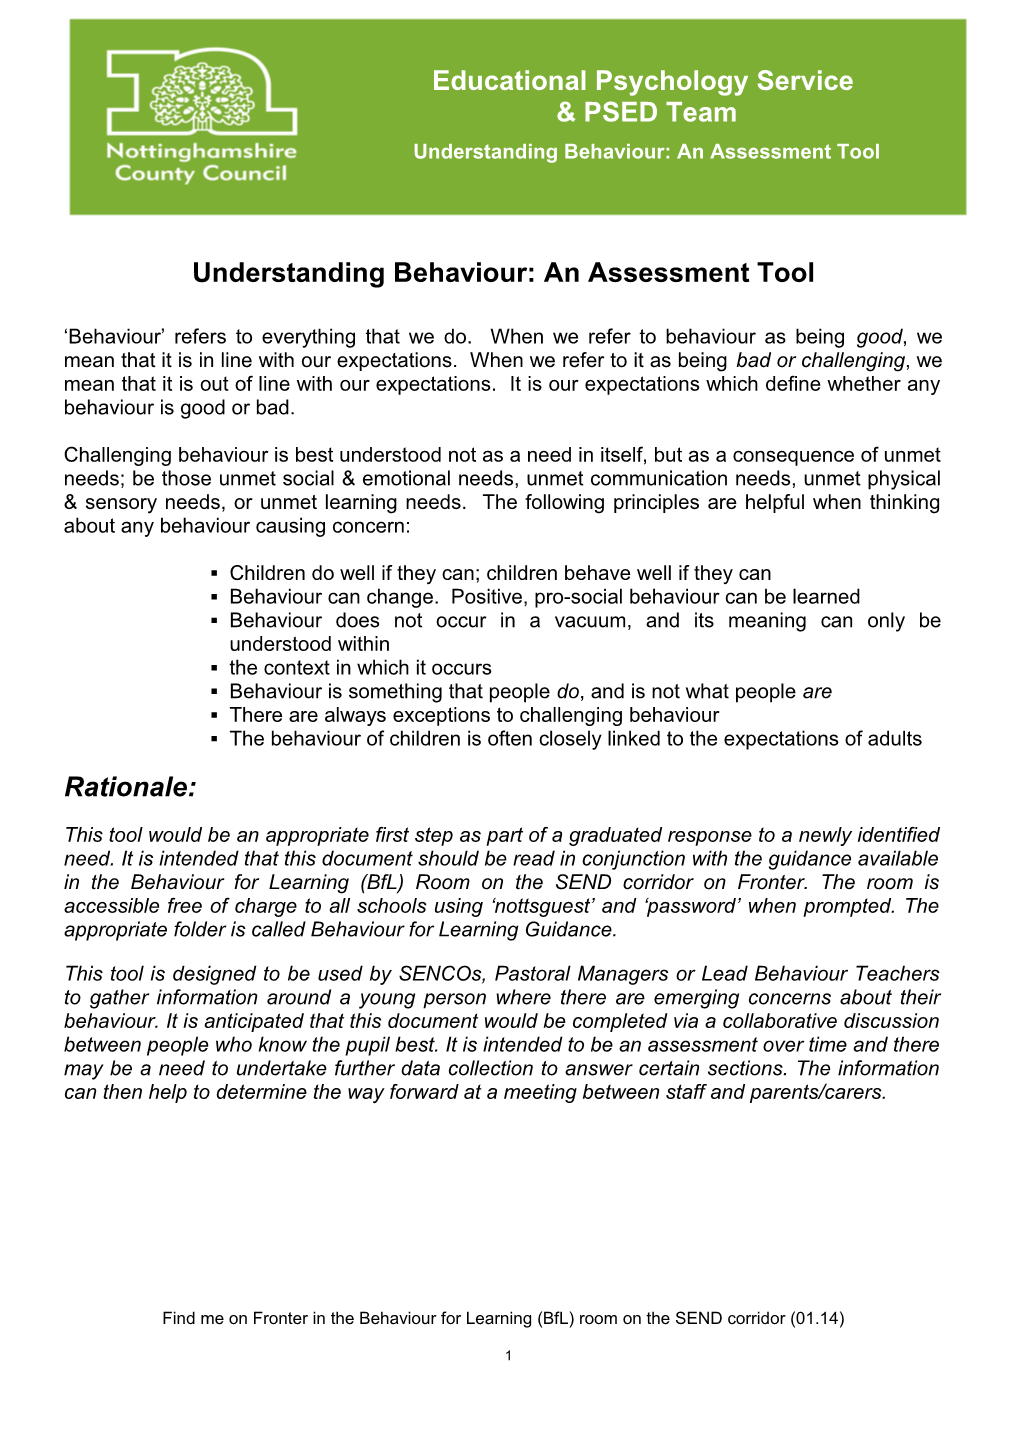 Understanding Behaviour: an Assessment Tool